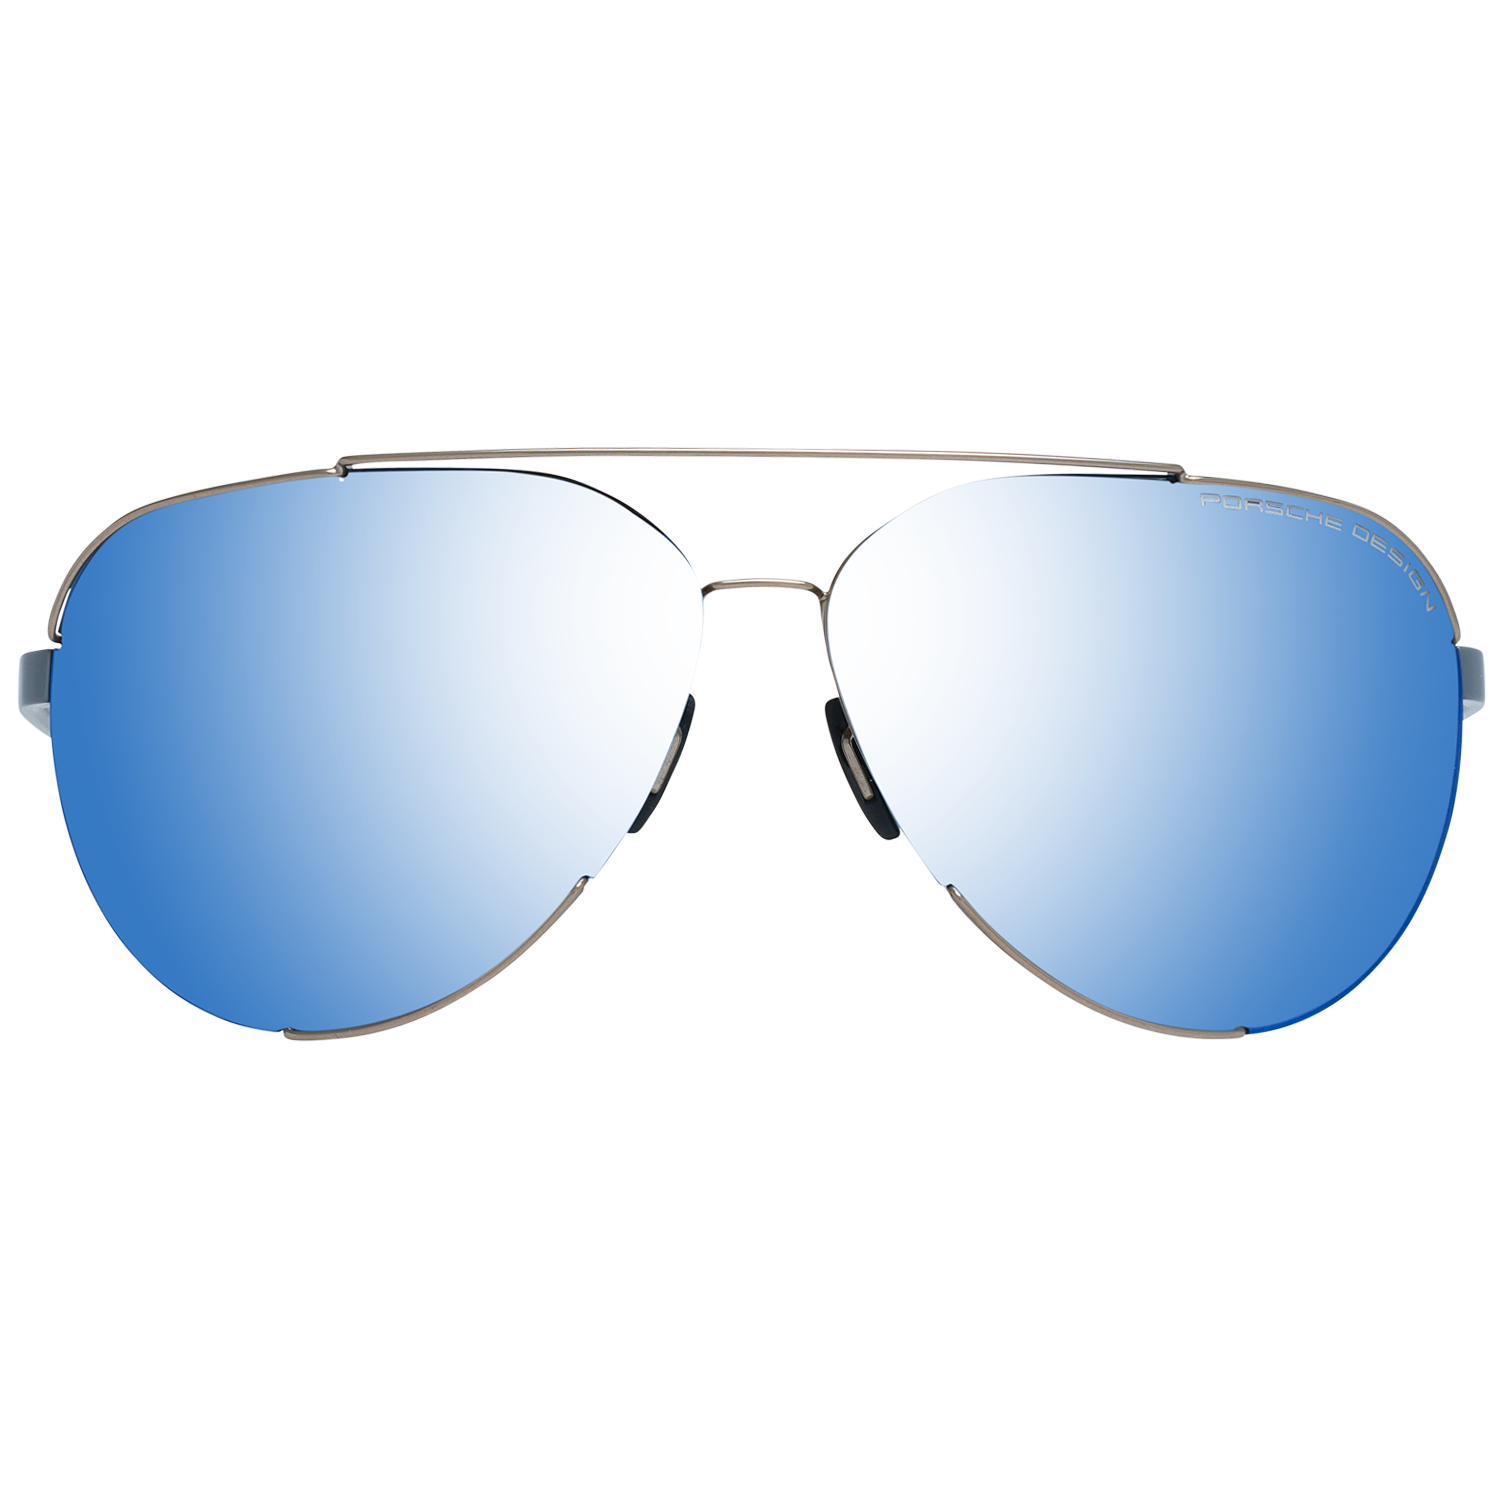 Porsche Design Sunglasses Porsche Design Sunglasses P8682 D 66 Mirrored Eyeglasses Eyewear UK USA Australia 